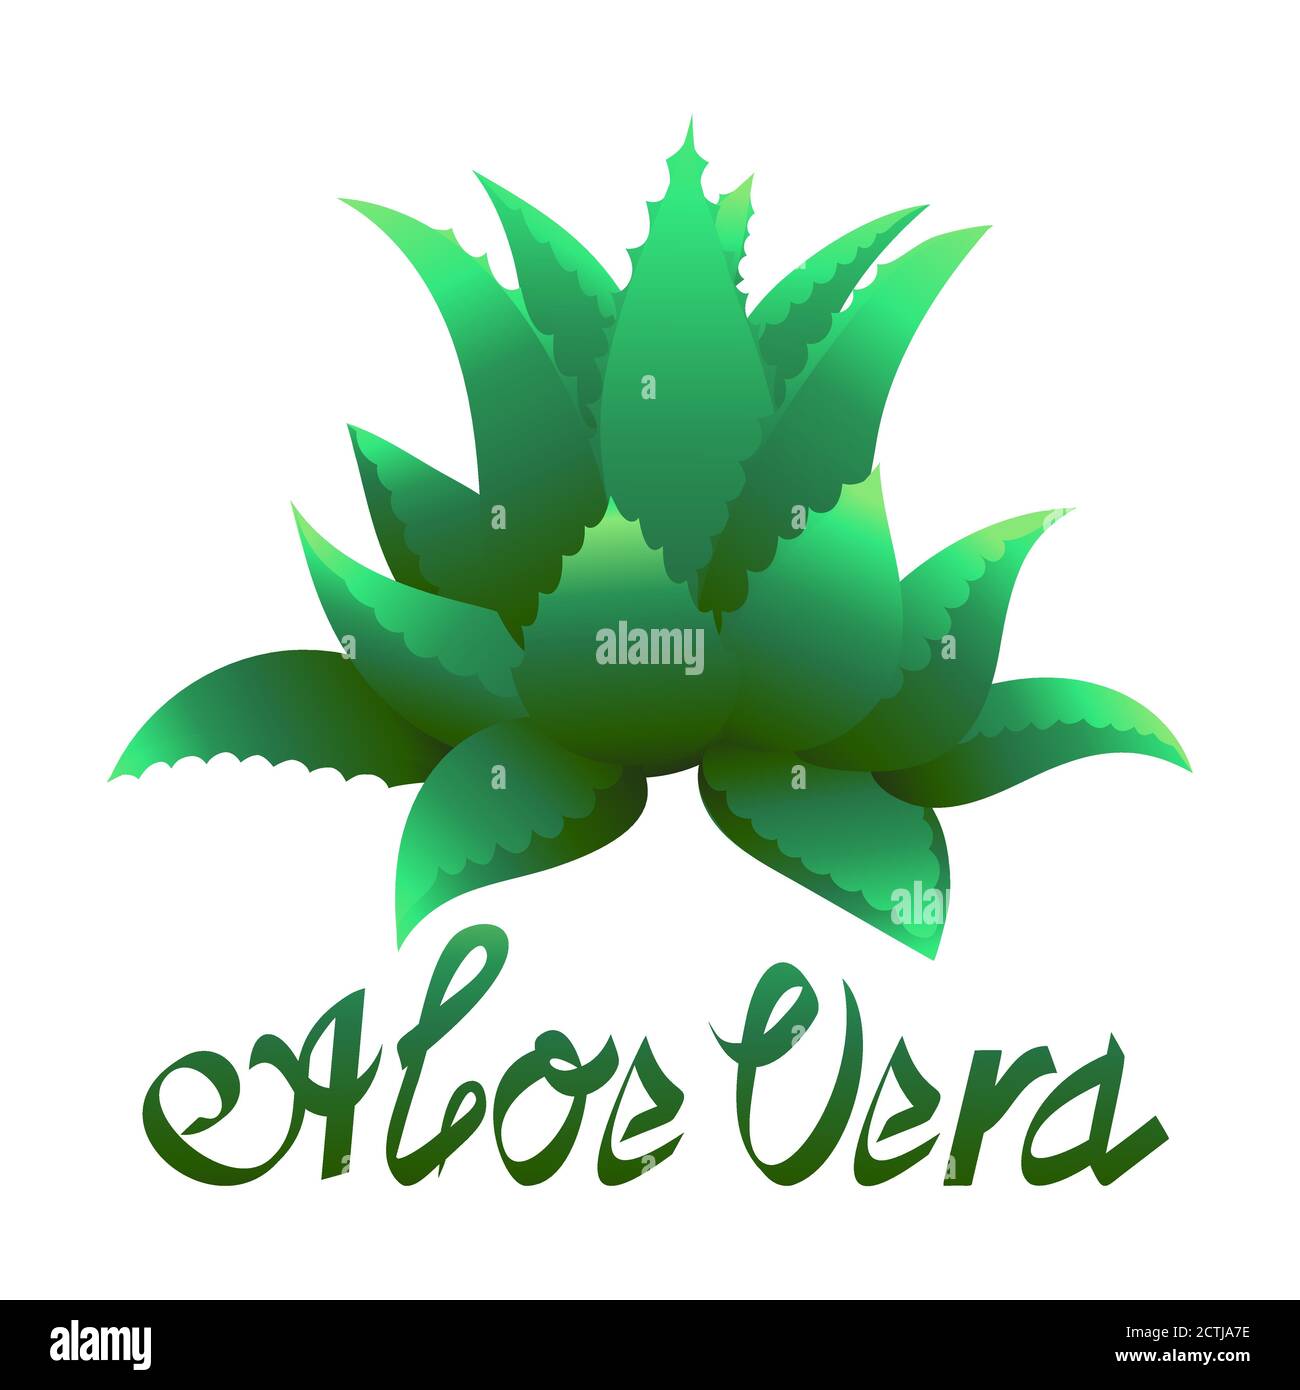 Aloe Vera Medizin Pflanze Vektor-Etikett. Natürliche medizinische grüne frische Kräuter Zeichen. Bio Hautpflege Kosmetik-Produkt-Paket wie Creme, Gel, Lotion. Stock Vektor